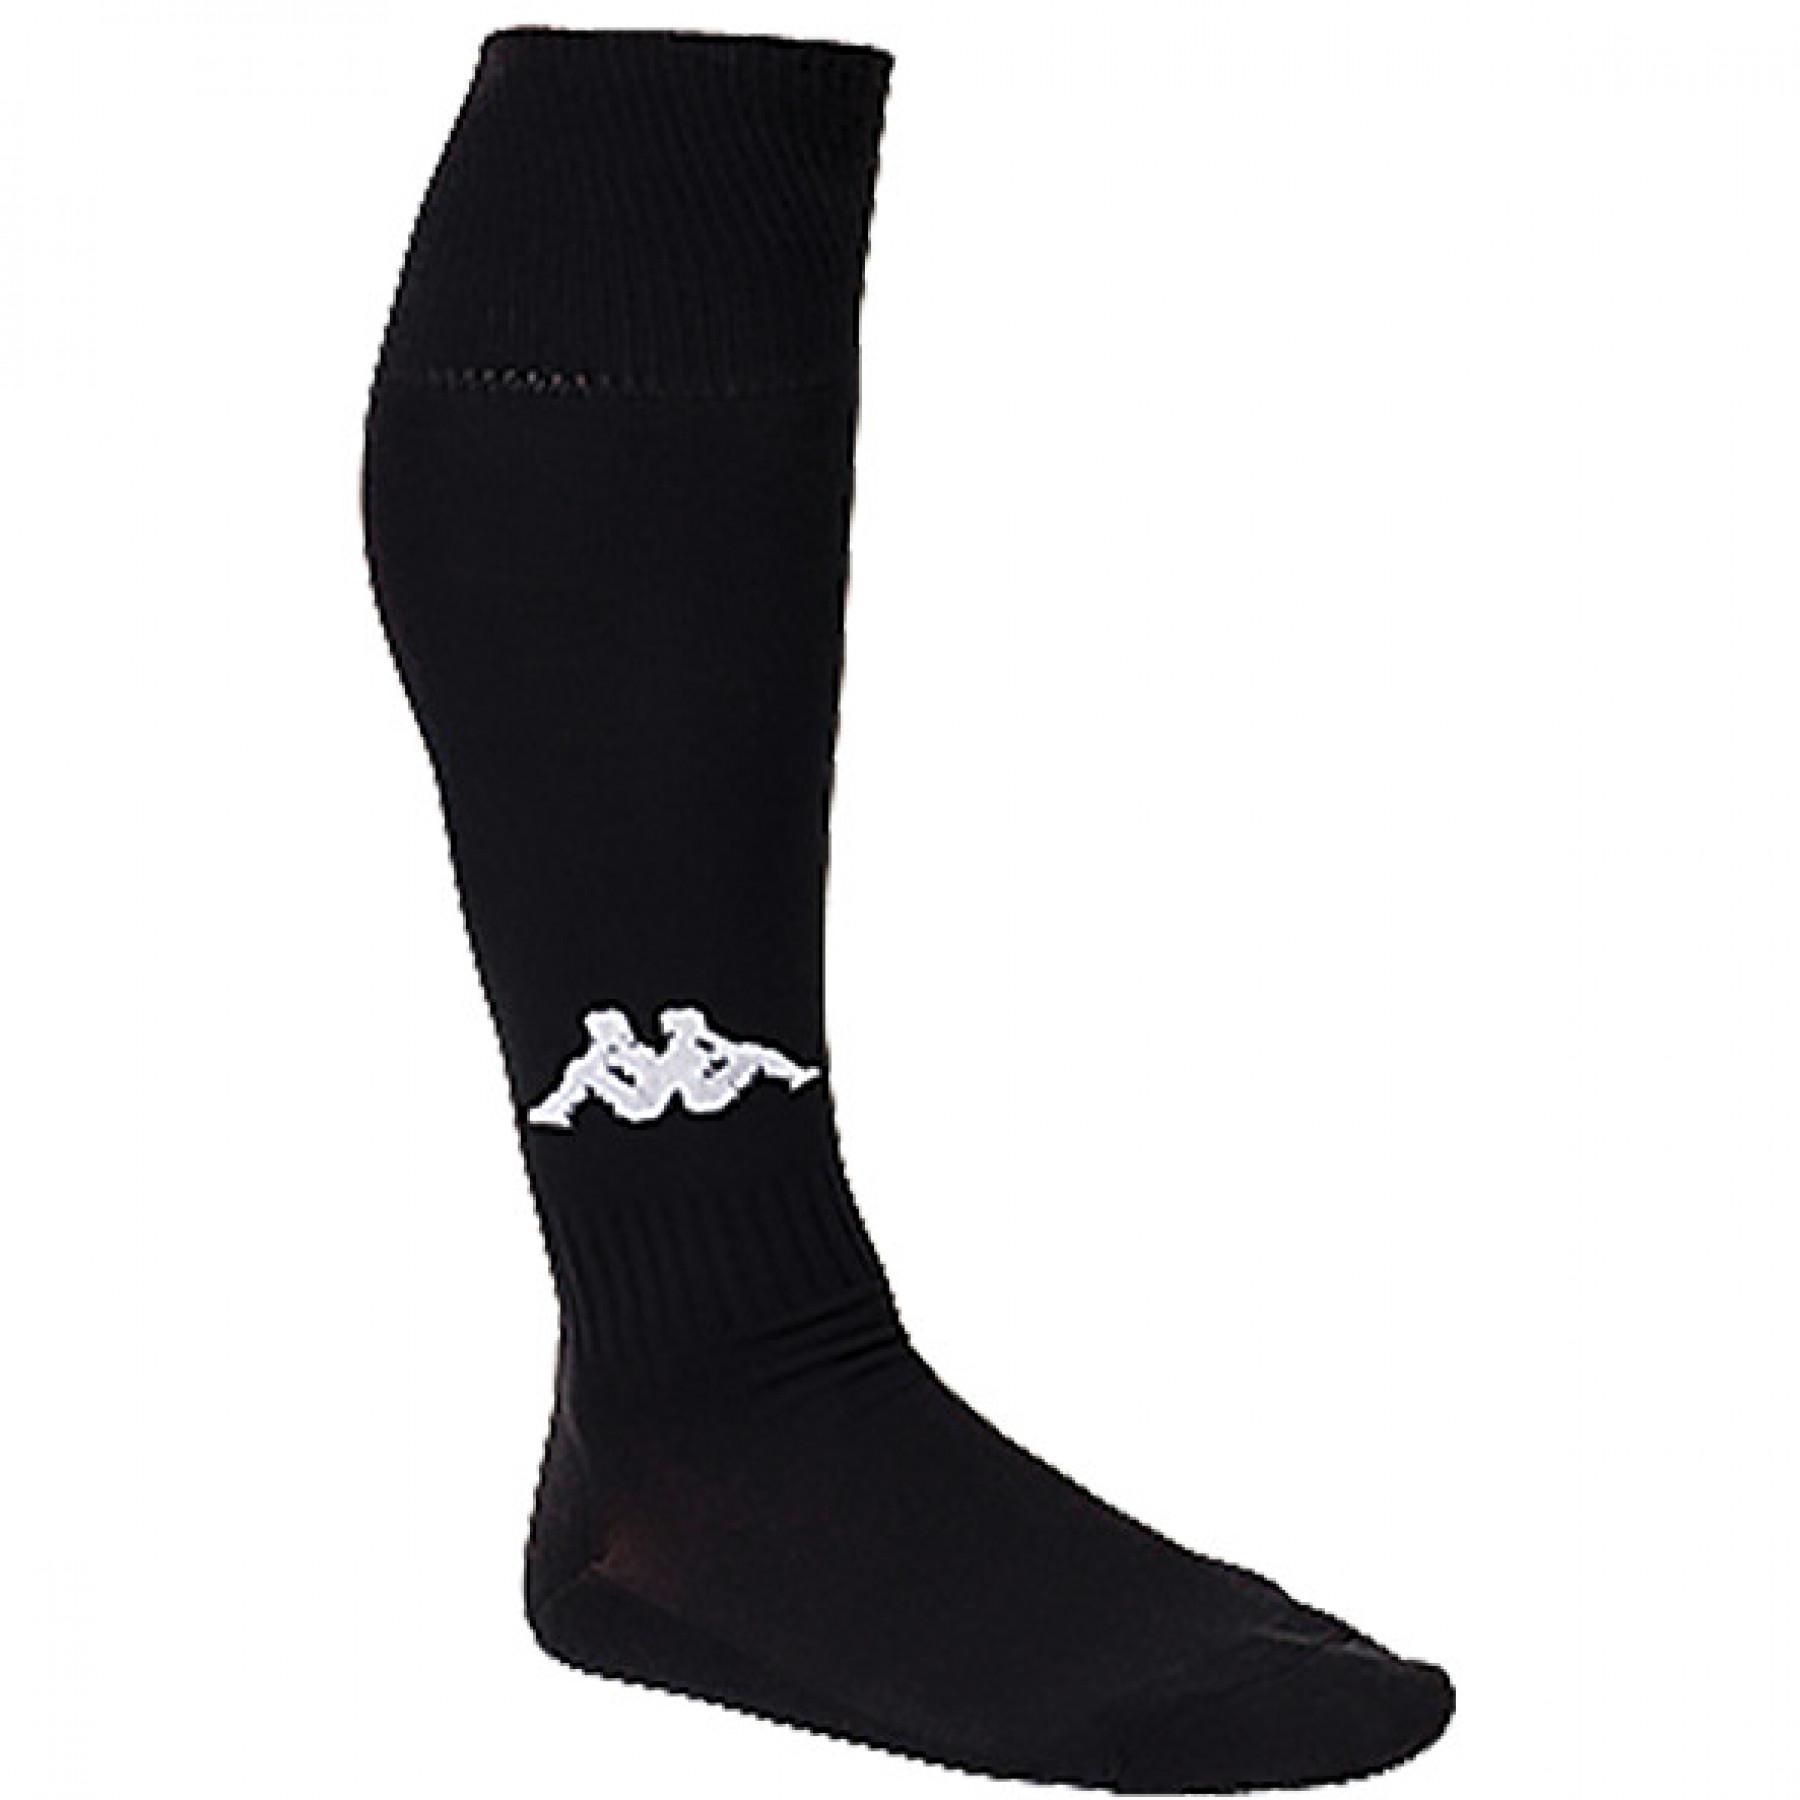 Paar sokken Kappa Penao (x3)